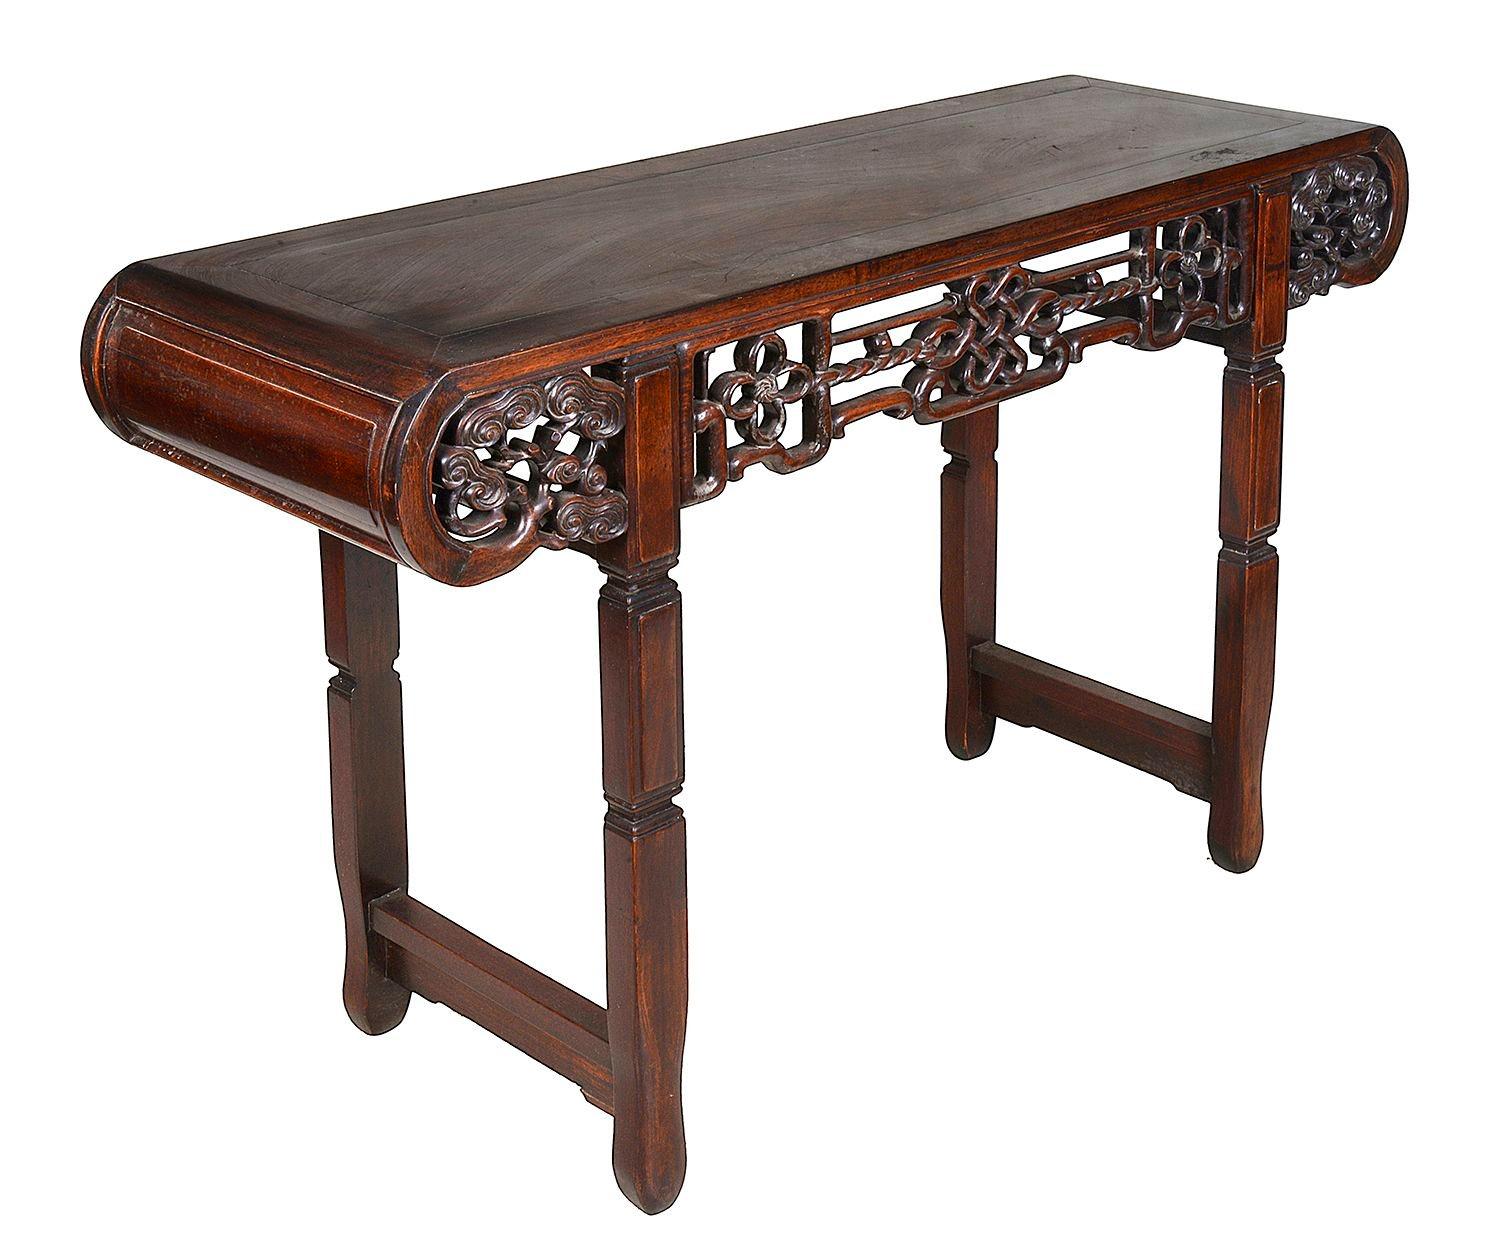 Table d'autel en bois dur chinois de très bonne qualité du XIXe siècle, avec des panneaux insérés sur le dessus et des extrémités en volutes, un ruban sculpté à la main et un décor de feuillage en volutes sur la frise, reposant sur des pieds de